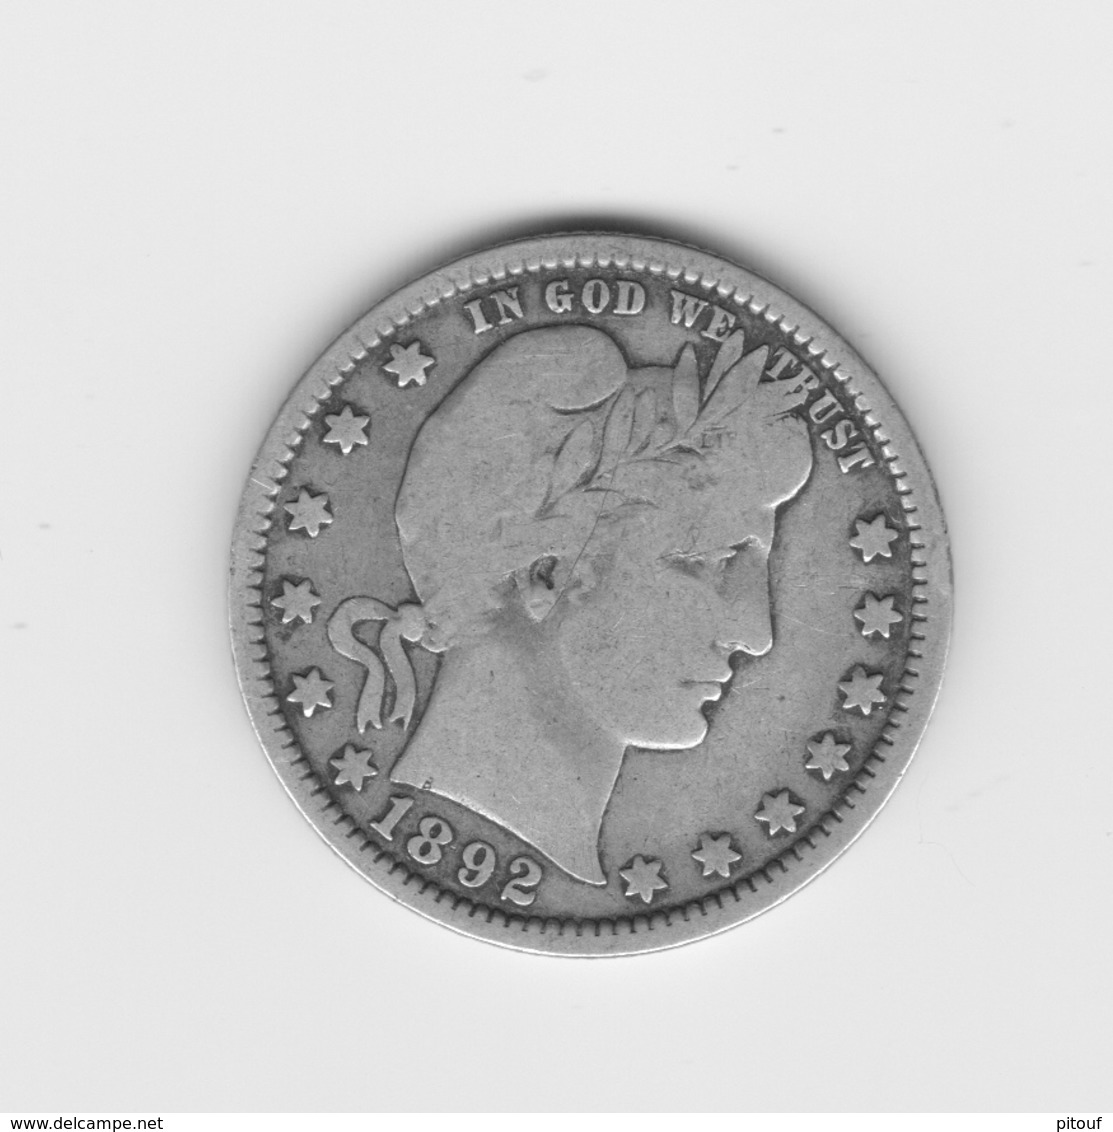 Très Beau Quart De Dollar US 1892   TTB - 1892-1916: Barber